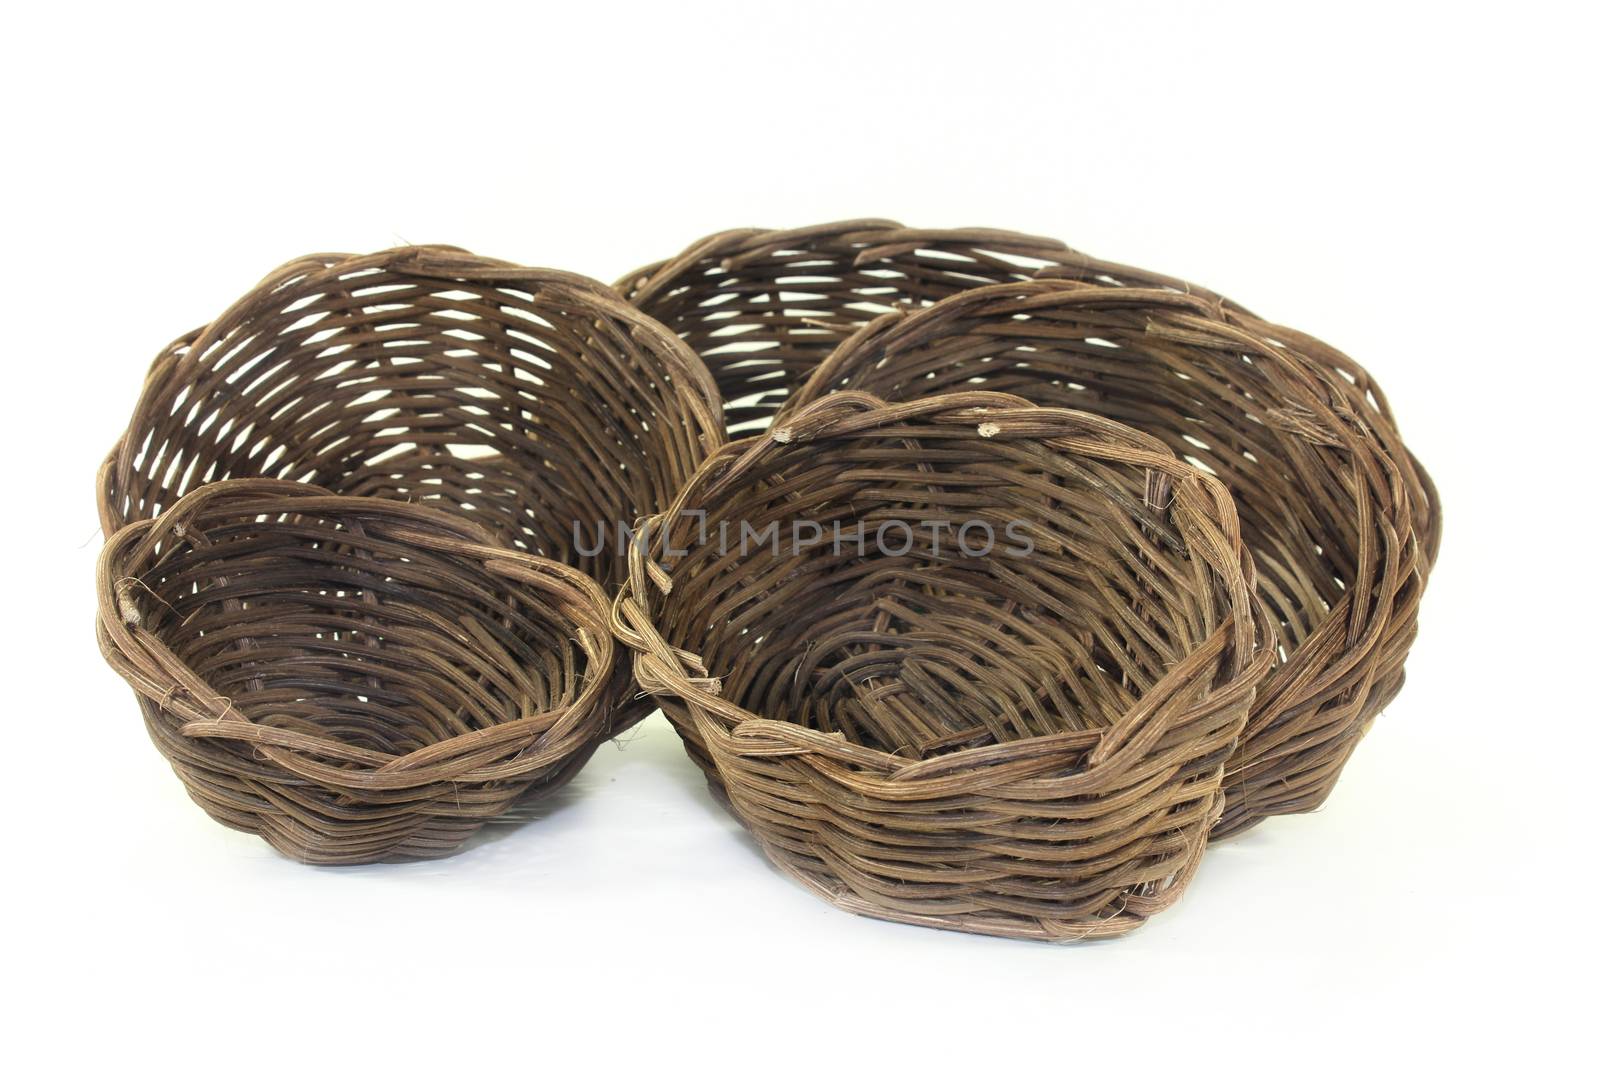 wicker baskets by silencefoto